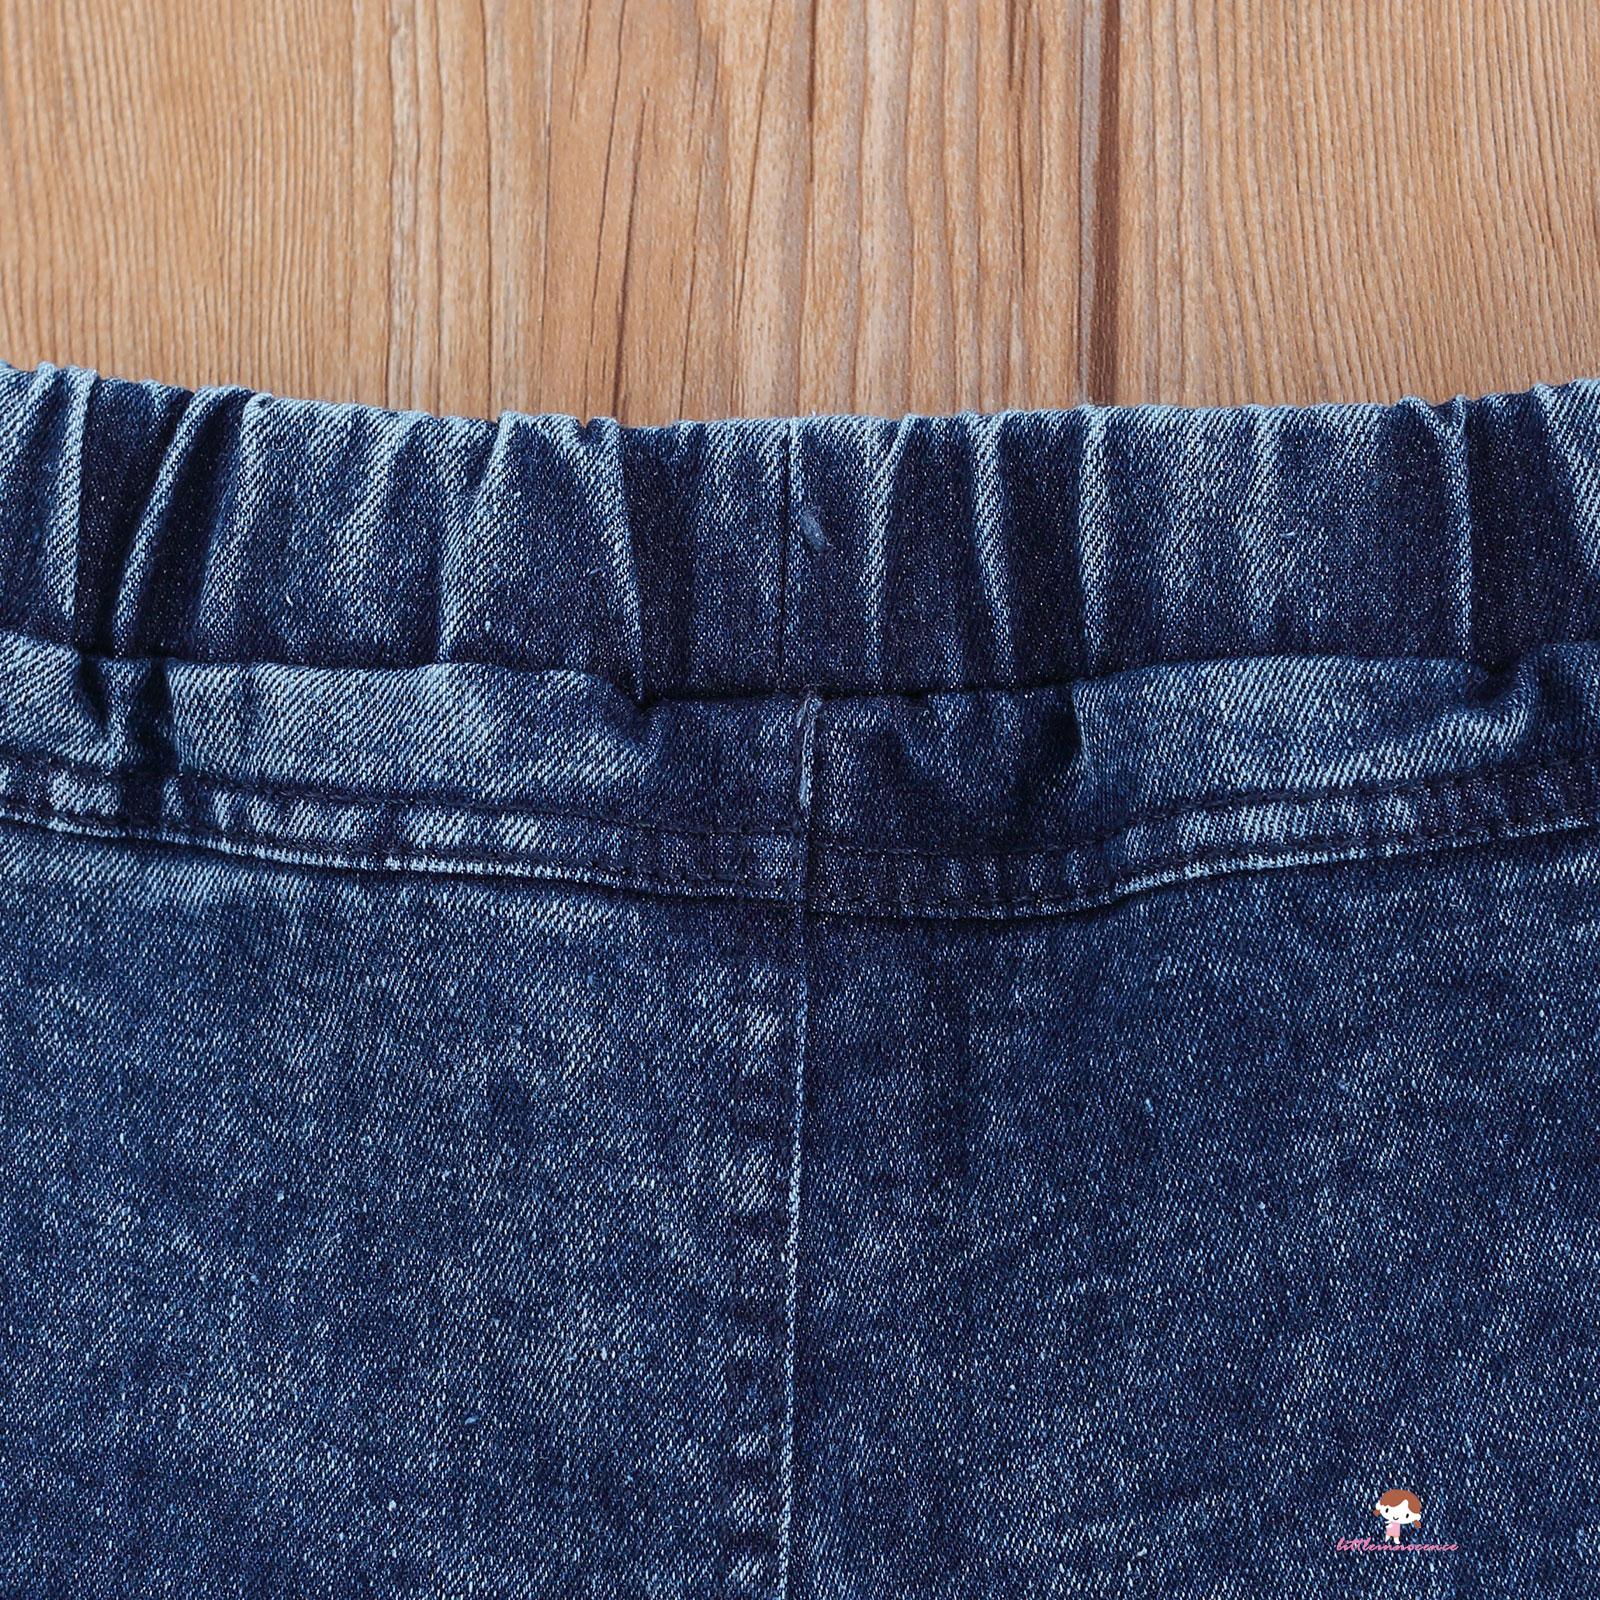 Quần Jeans Lưng Cao Thời Trang Cho Bé Gái 2-7 Tuổi 2-7 Tuổi